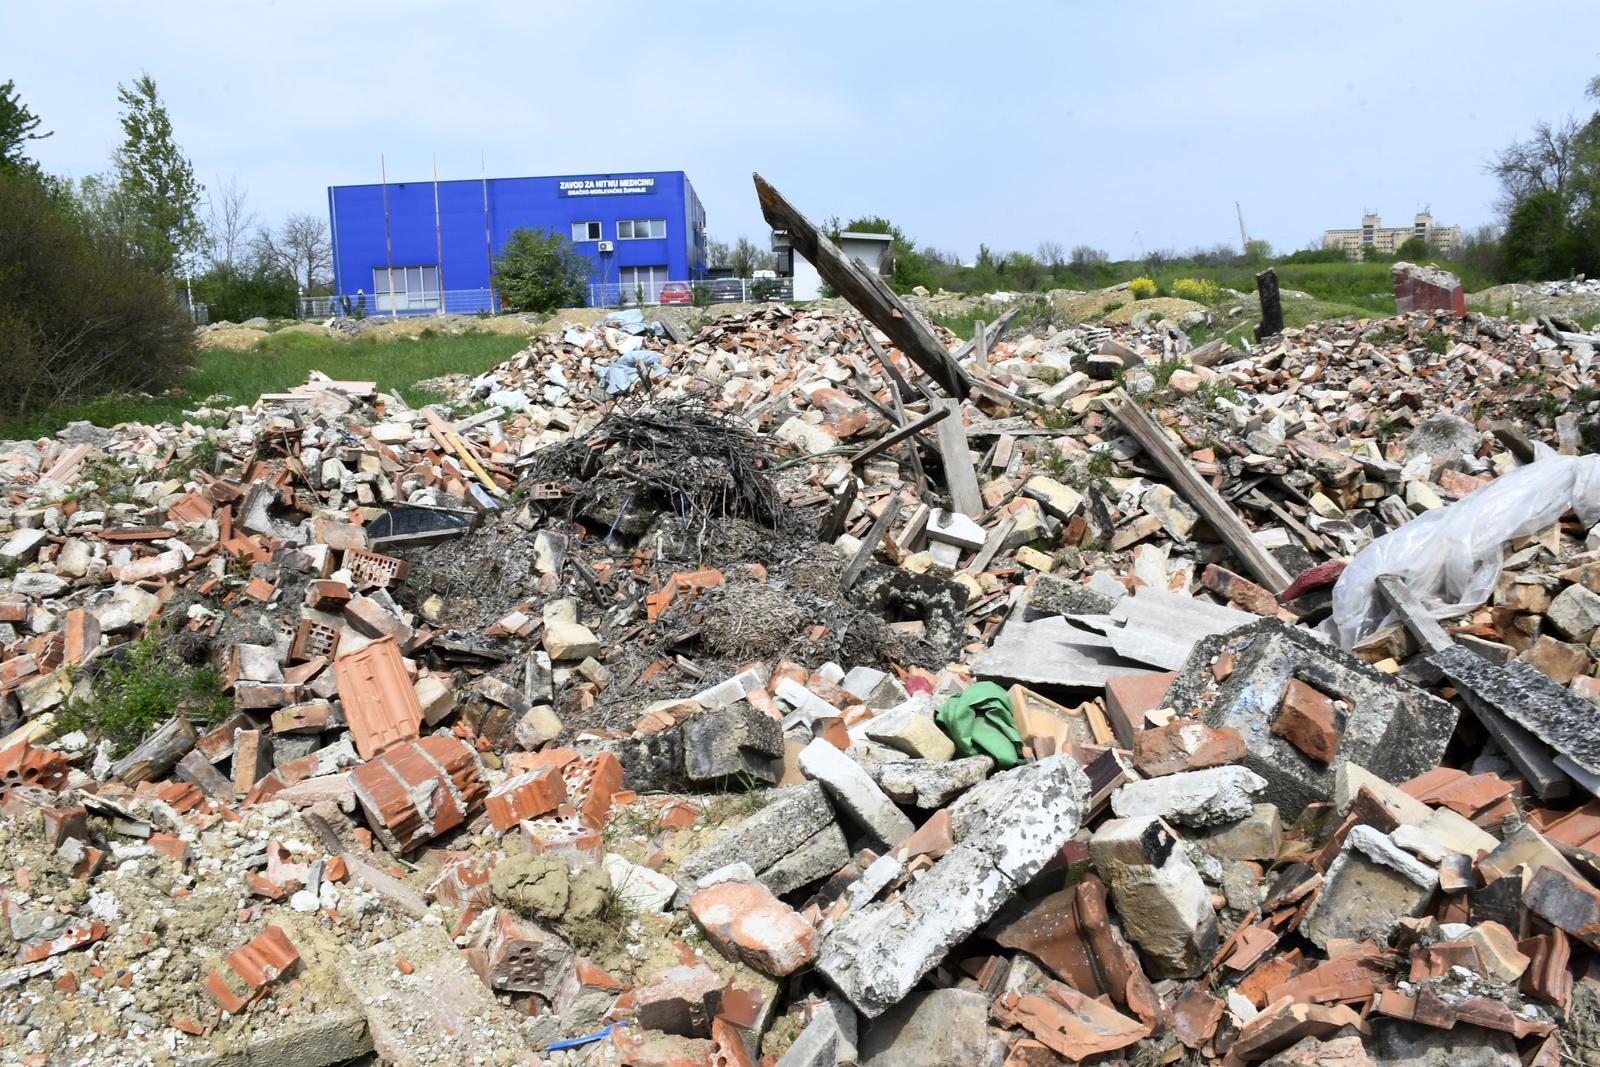 26.04.2021., Sisak - Divlje odlagaliste gradjevinskog otpada na koje gradjani bacaju ostatke u potresu ostecenih kuca. Photo: Nikola Cutuk/PIXSELL